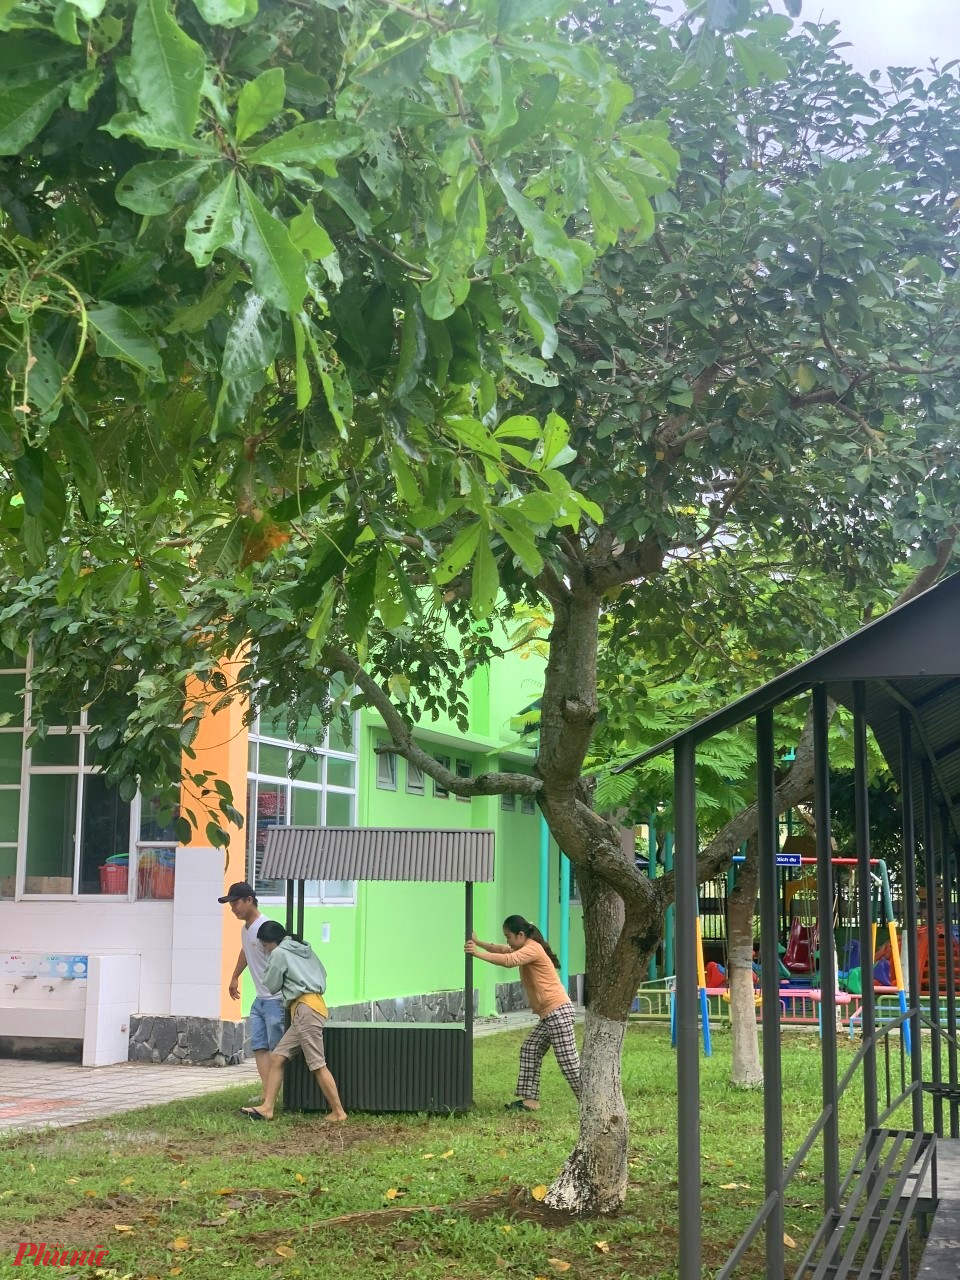 Bên cạnh đó các cô giáo còn nhận được sự hỗ trợ của người dân đại phương trong việc dọn dẹp, chặt tỉa cây xanh trong khuôn viên sân trường